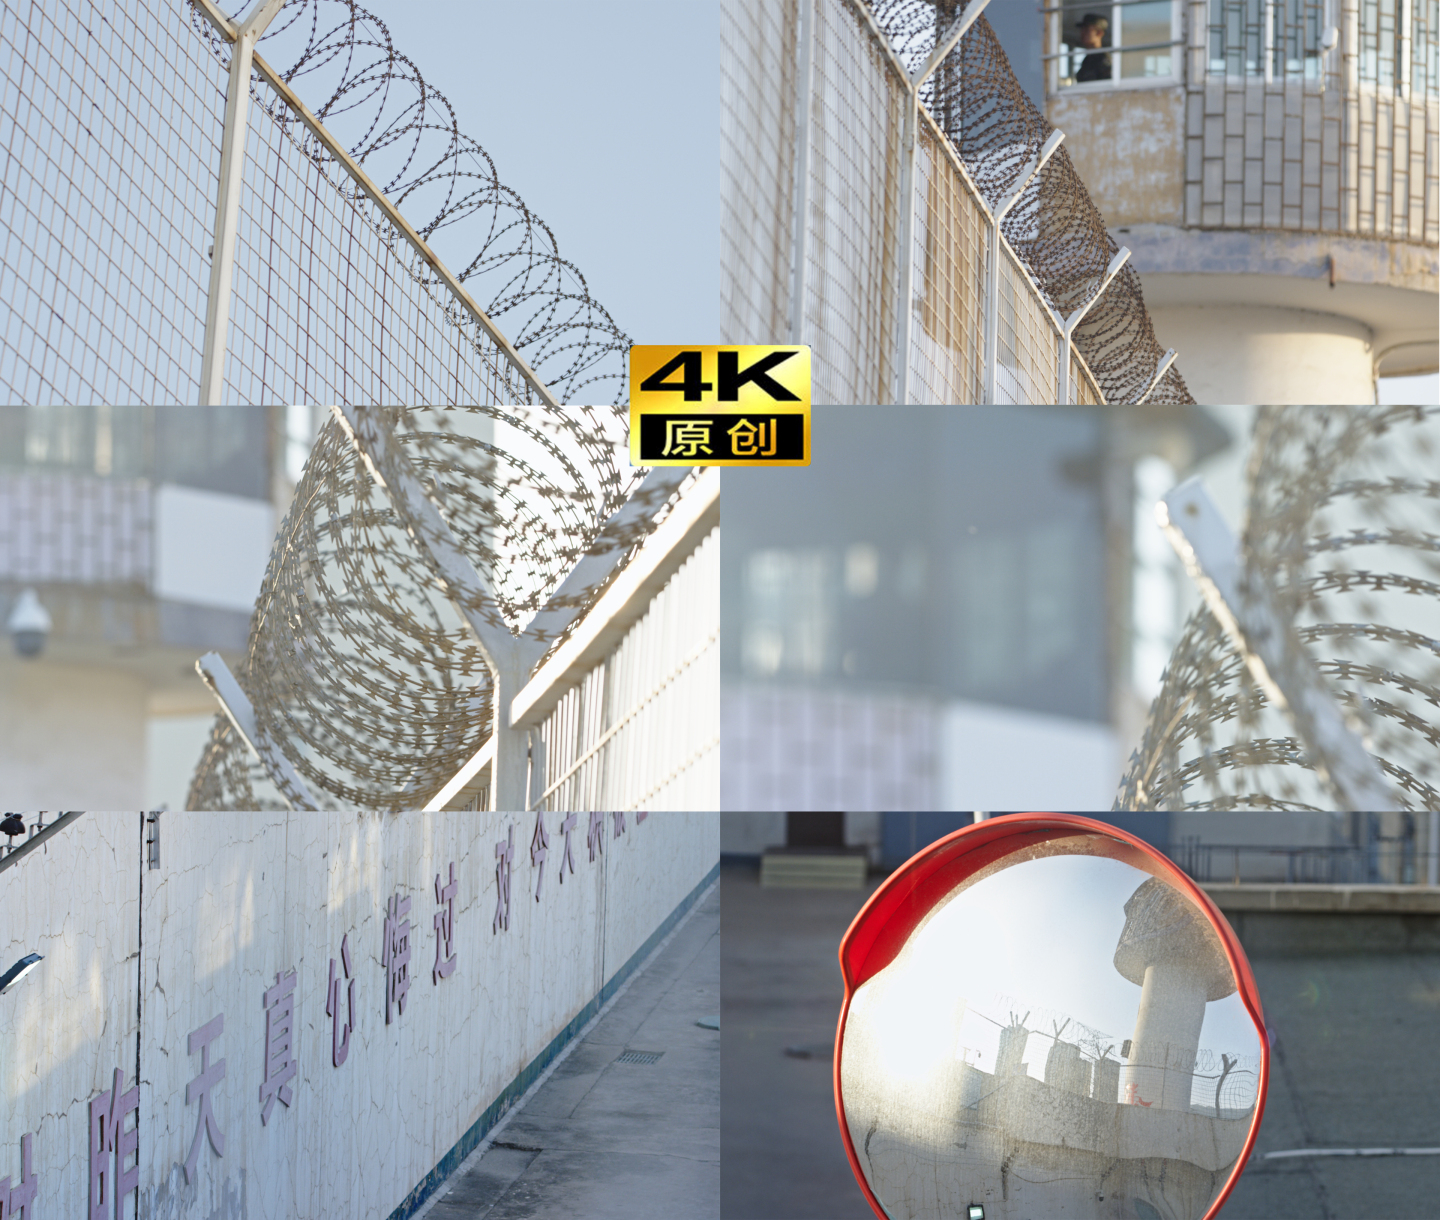 4K监狱 看守所 高墙 铁丝网